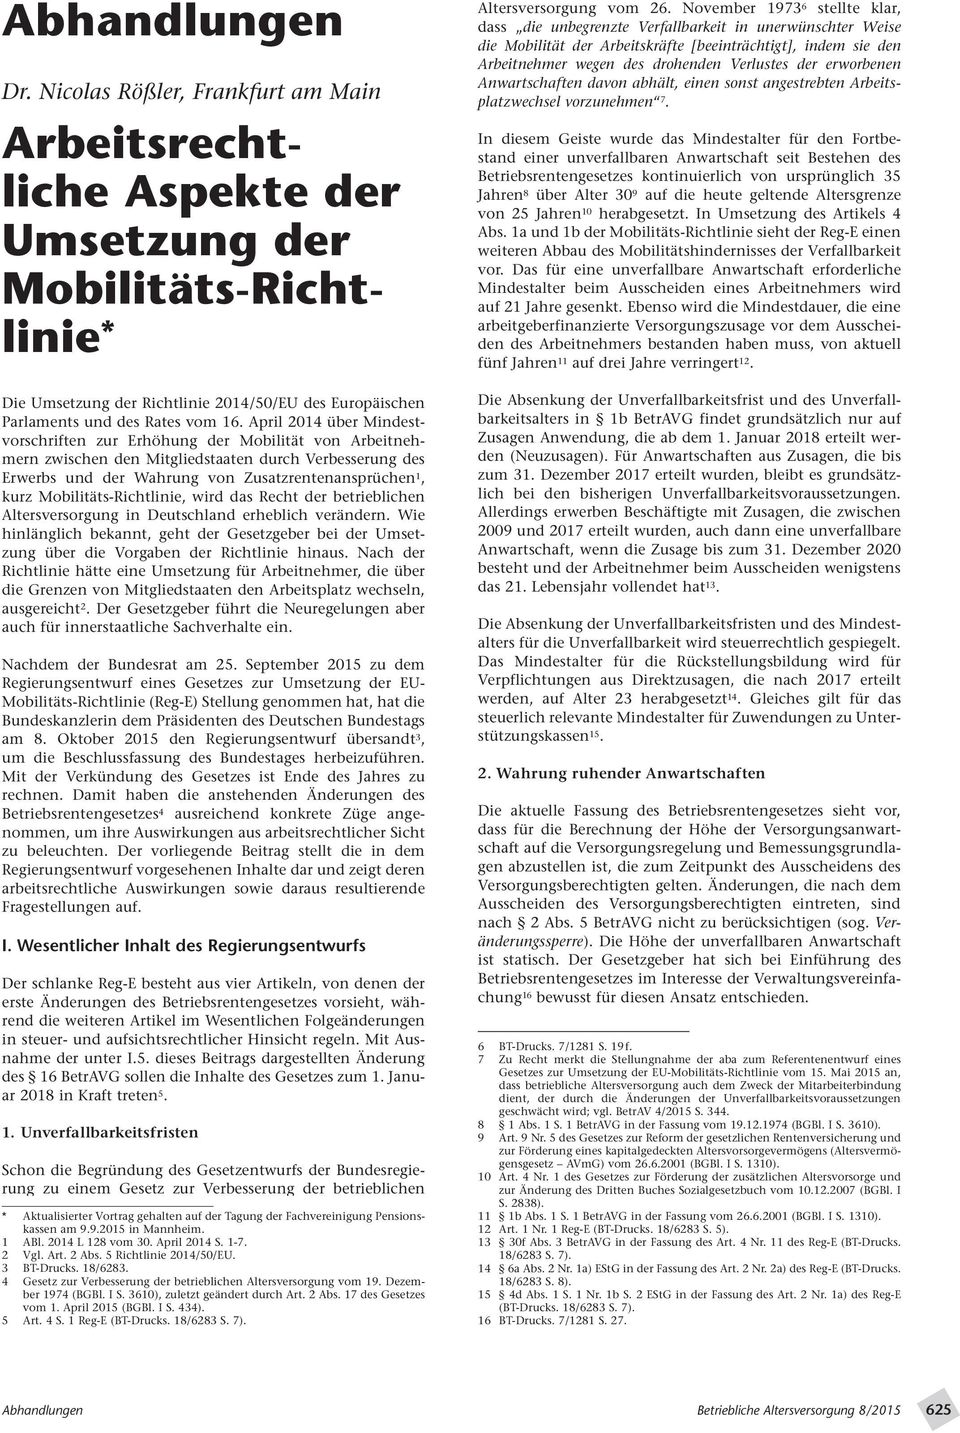 April 2014 über Mindestvorschriften zur Erhöhung der Mobilität von Arbeitnehmern zwischen den Mitgliedstaaten durch Verbesserung des Erwerbs und der Wahrung von Zusatzrentenansprüchen 1, kurz